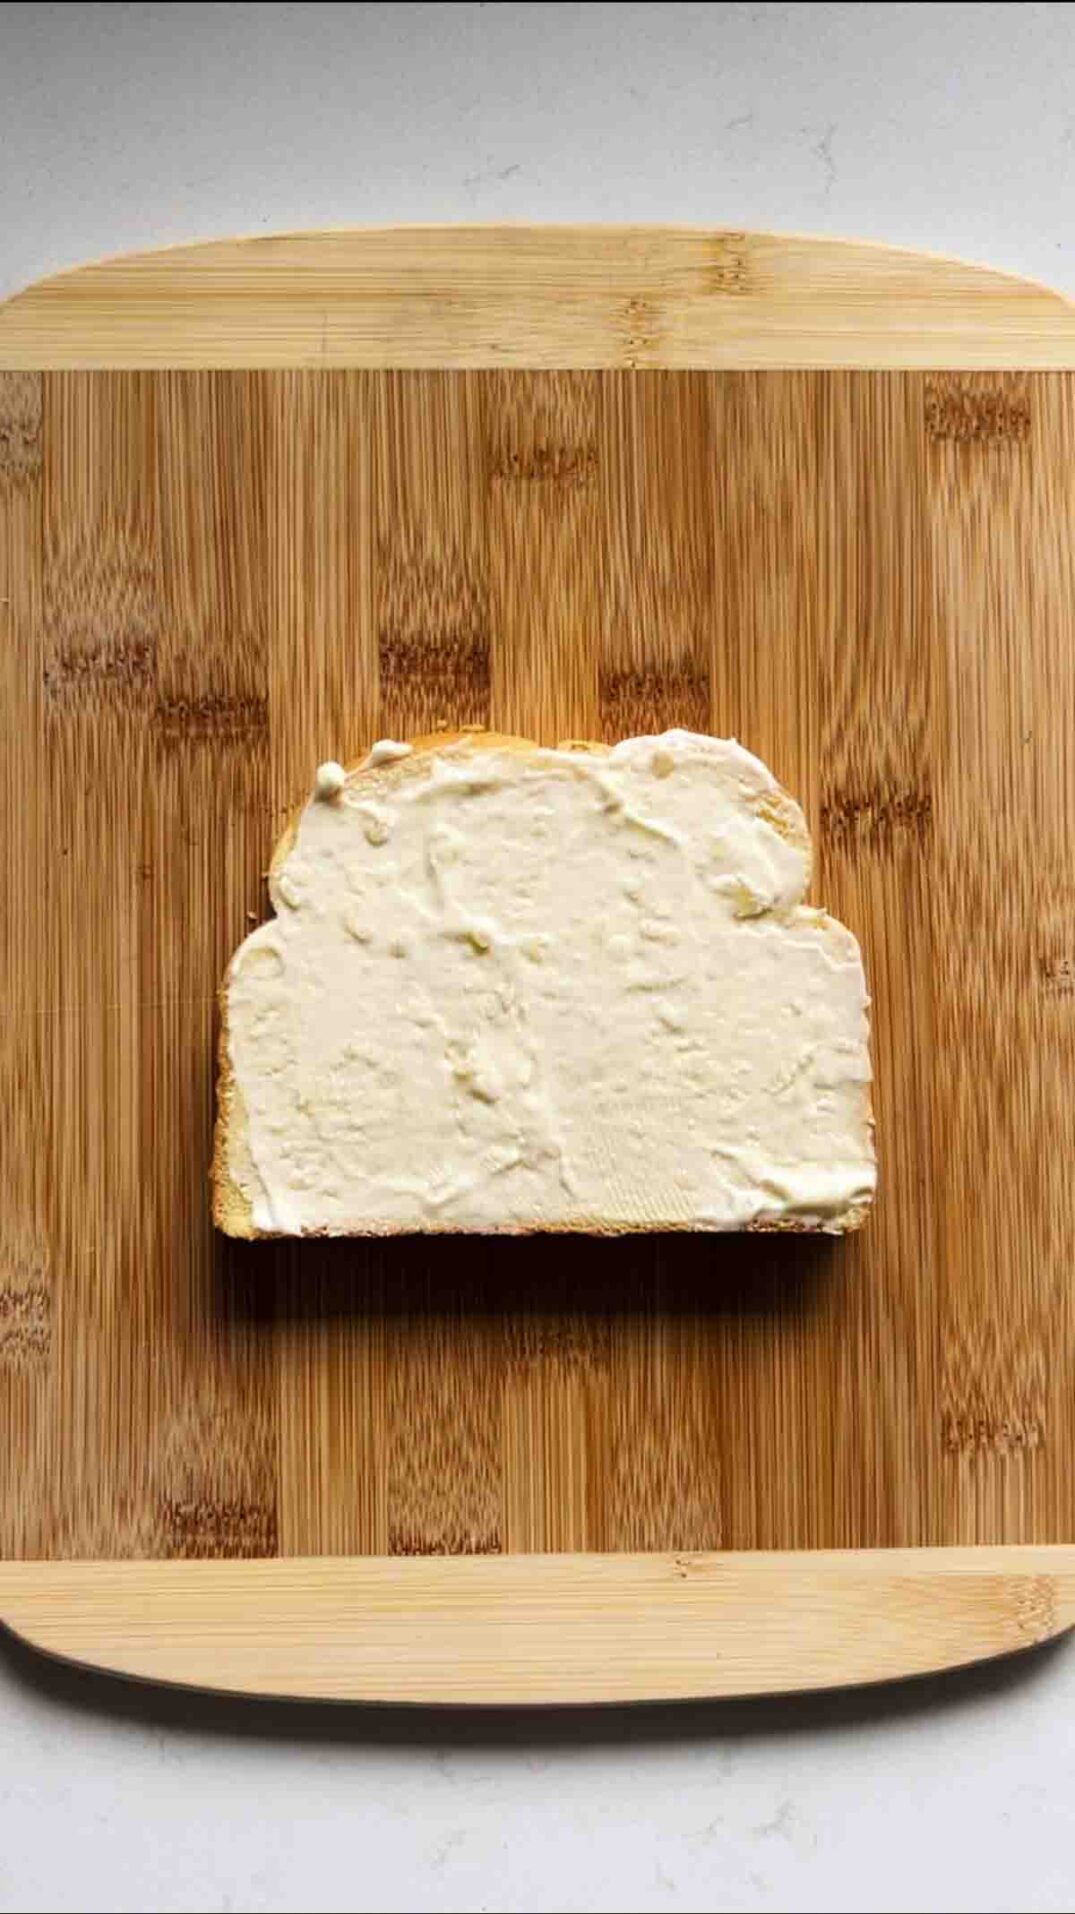 garlic truffle mayo on a slice of bread on a cutting board.